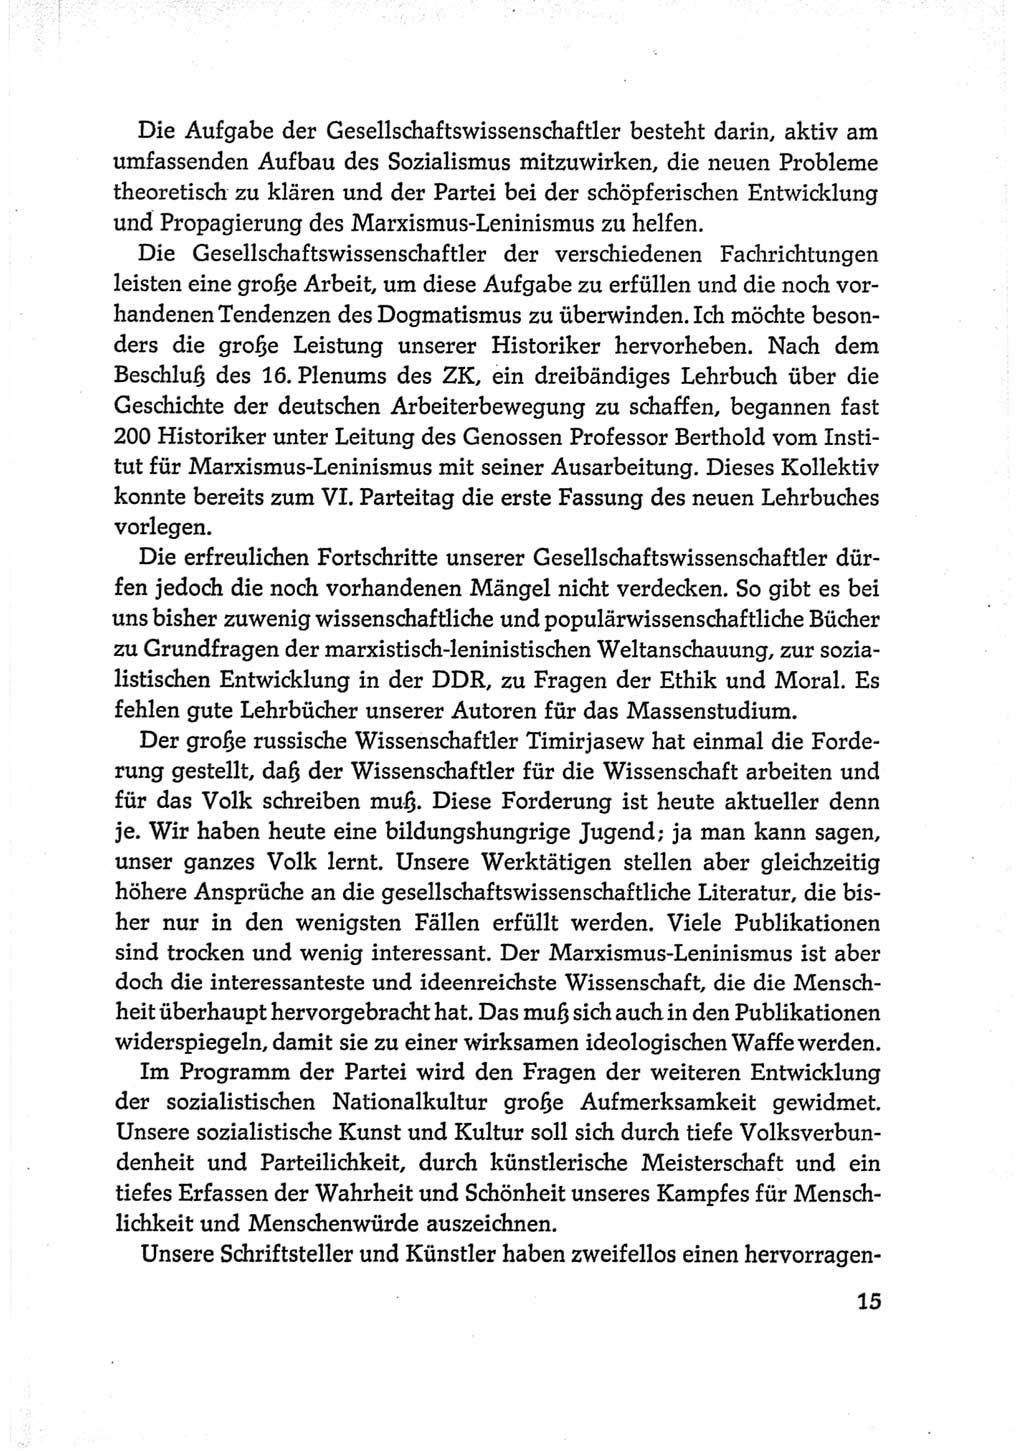 Protokoll der Verhandlungen des Ⅵ. Parteitages der Sozialistischen Einheitspartei Deutschlands (SED) [Deutsche Demokratische Republik (DDR)] 1963, Band Ⅱ, Seite 15 (Prot. Verh. Ⅵ. PT SED DDR 1963, Bd. Ⅱ, S. 15)